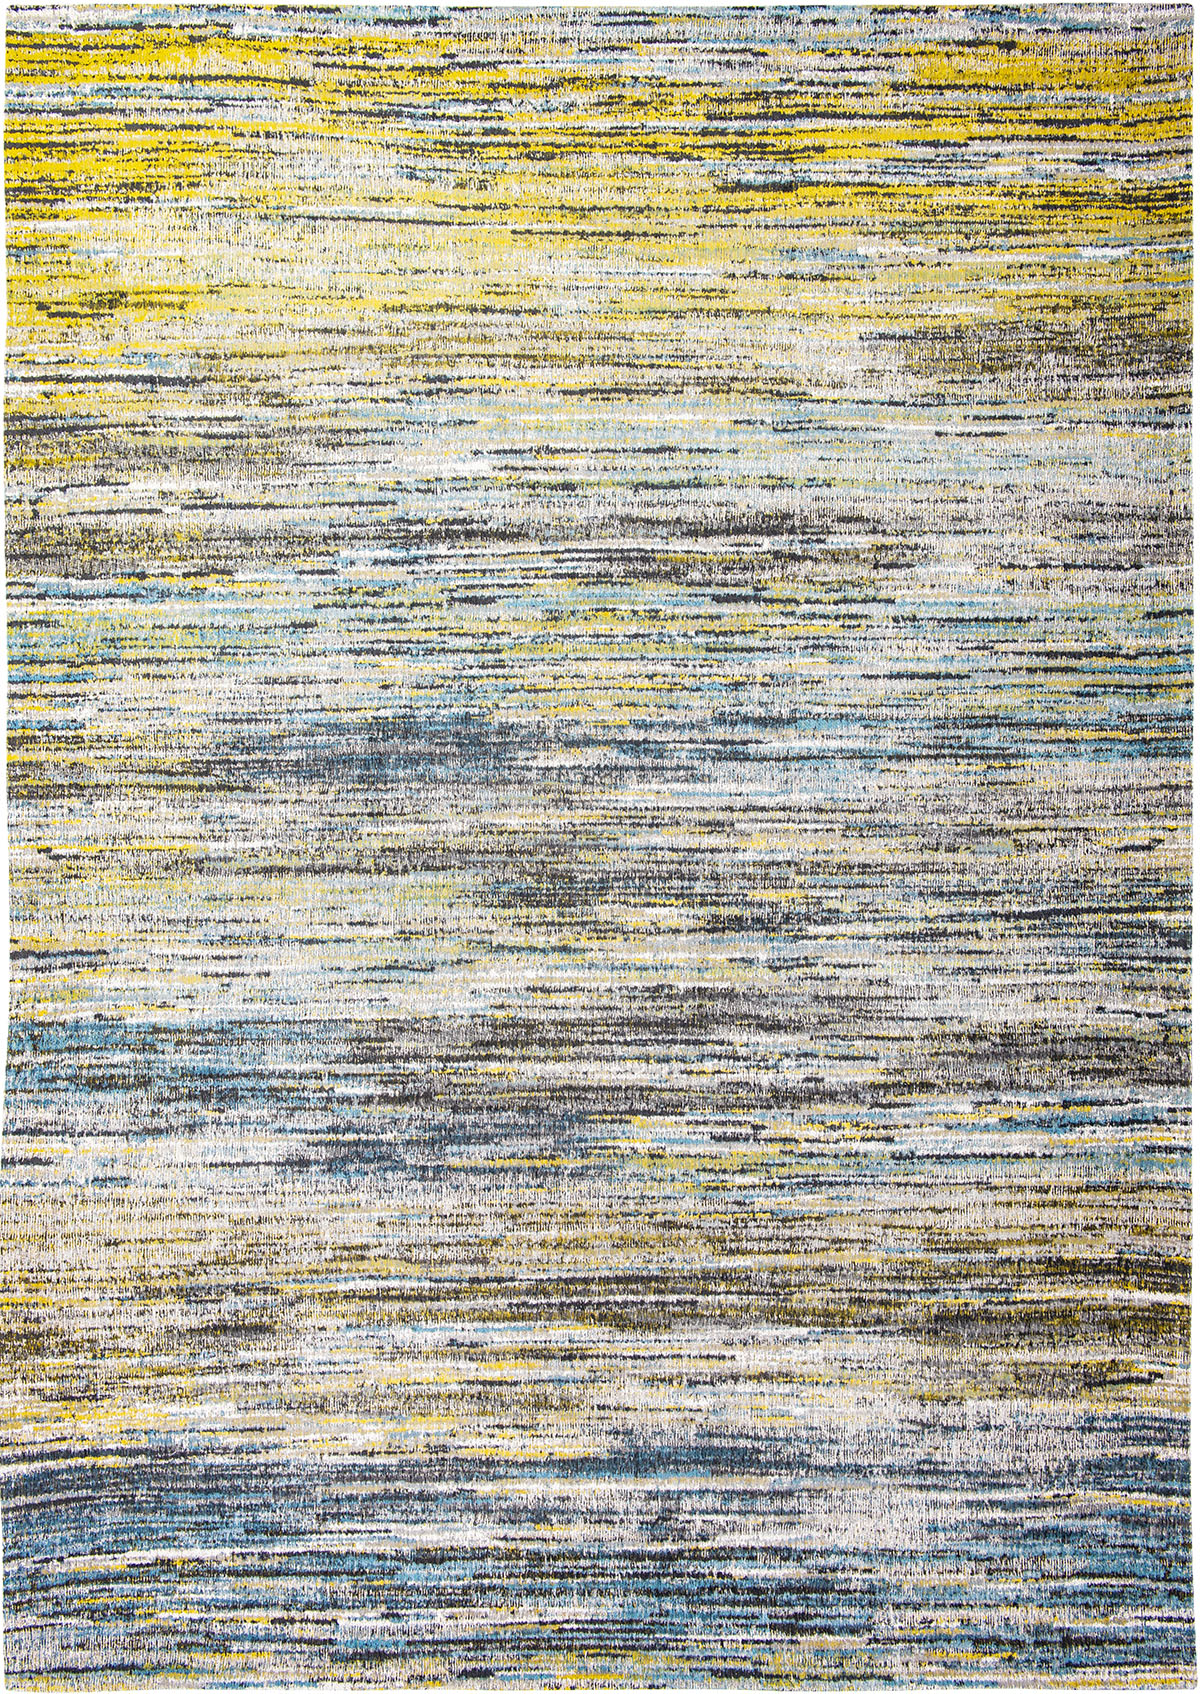 Żółto Niebieski Dywan w Paski - BLUE YELLOW MIX 8873 - Rozmiar: 140x200 cm